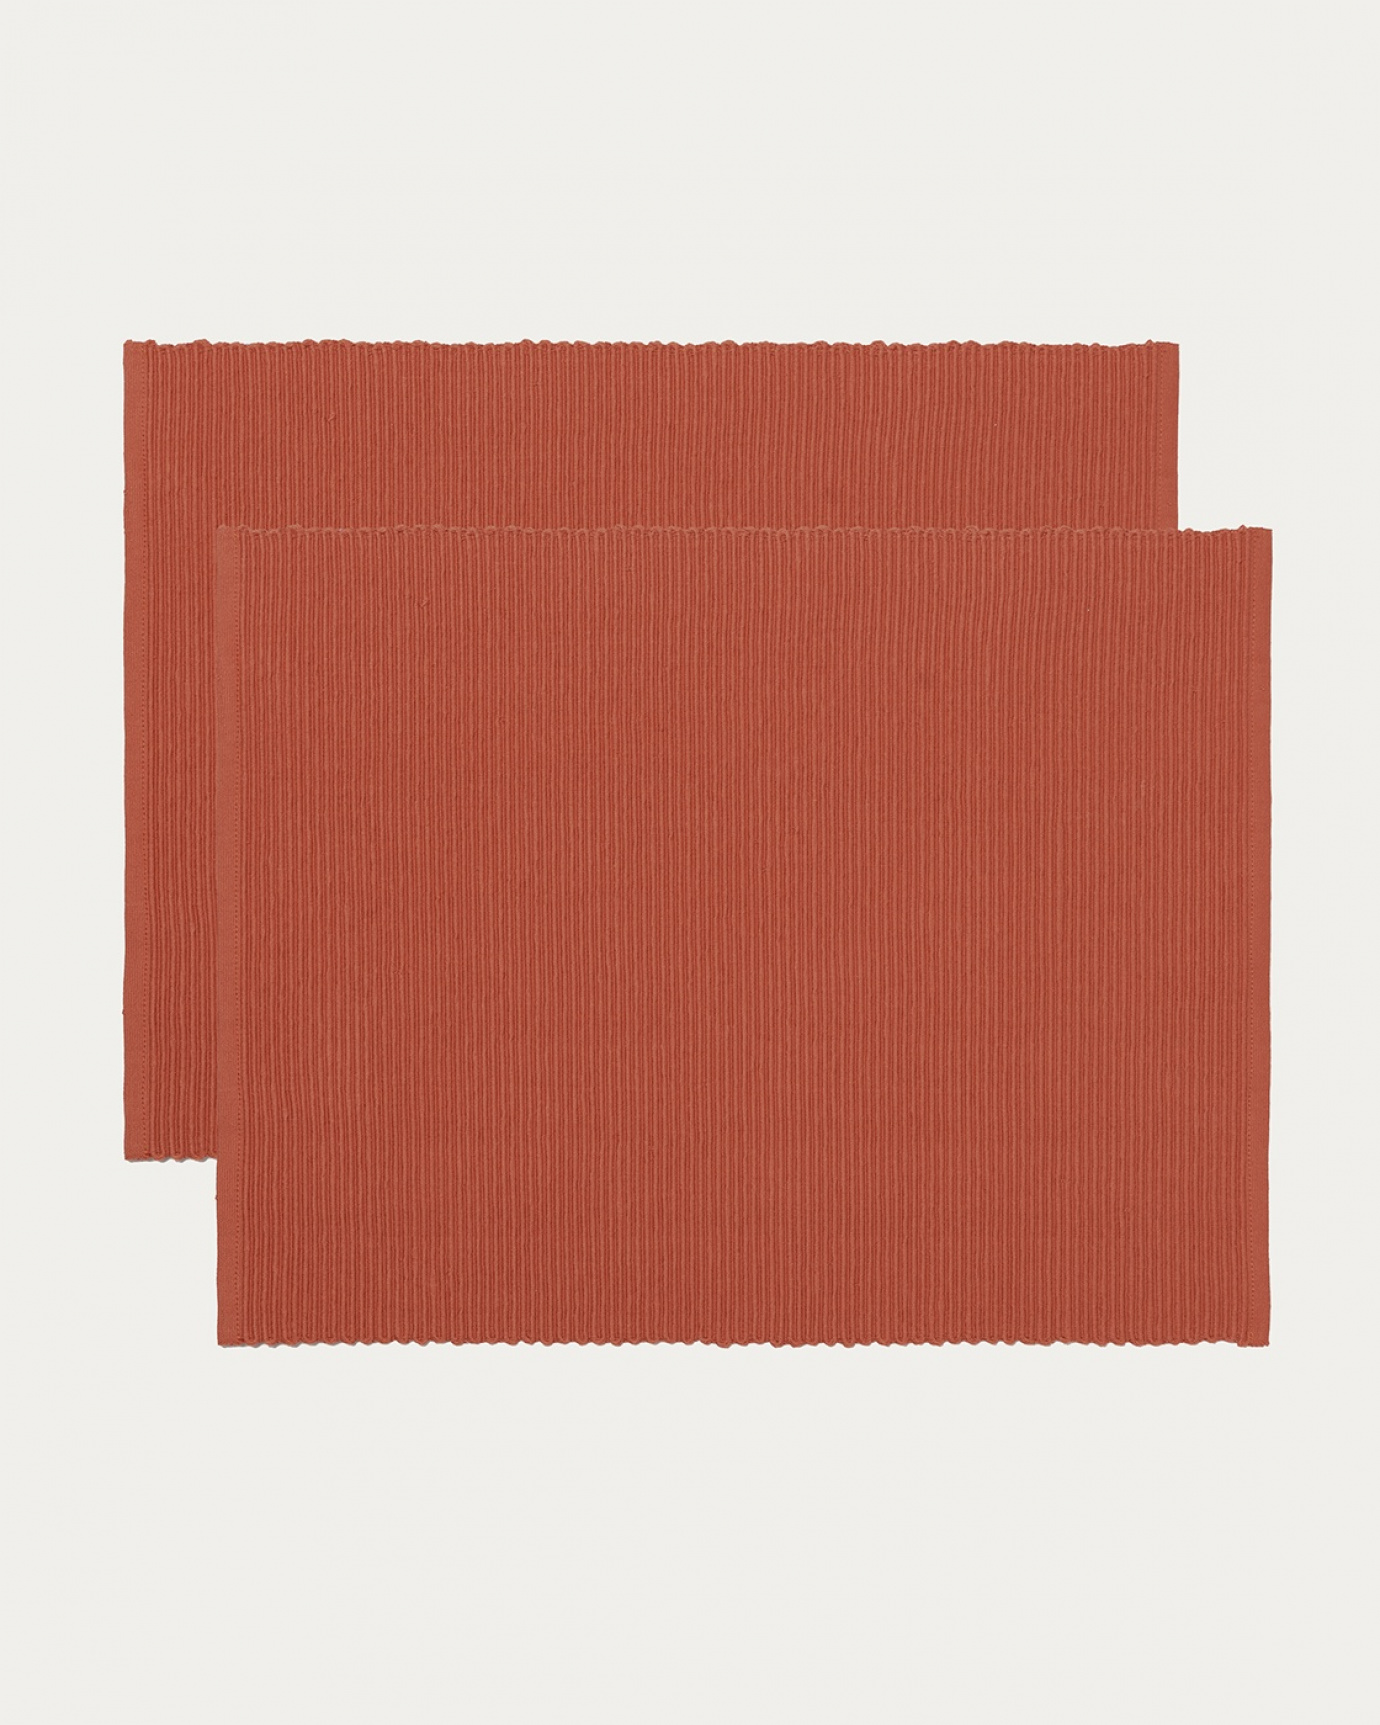 Produktbild rostorange UNI bordstablett av mjuk bomull i ribbad kvalité från LINUM DESIGN. Storlek 35x46 cm och säljs i 2-pack.